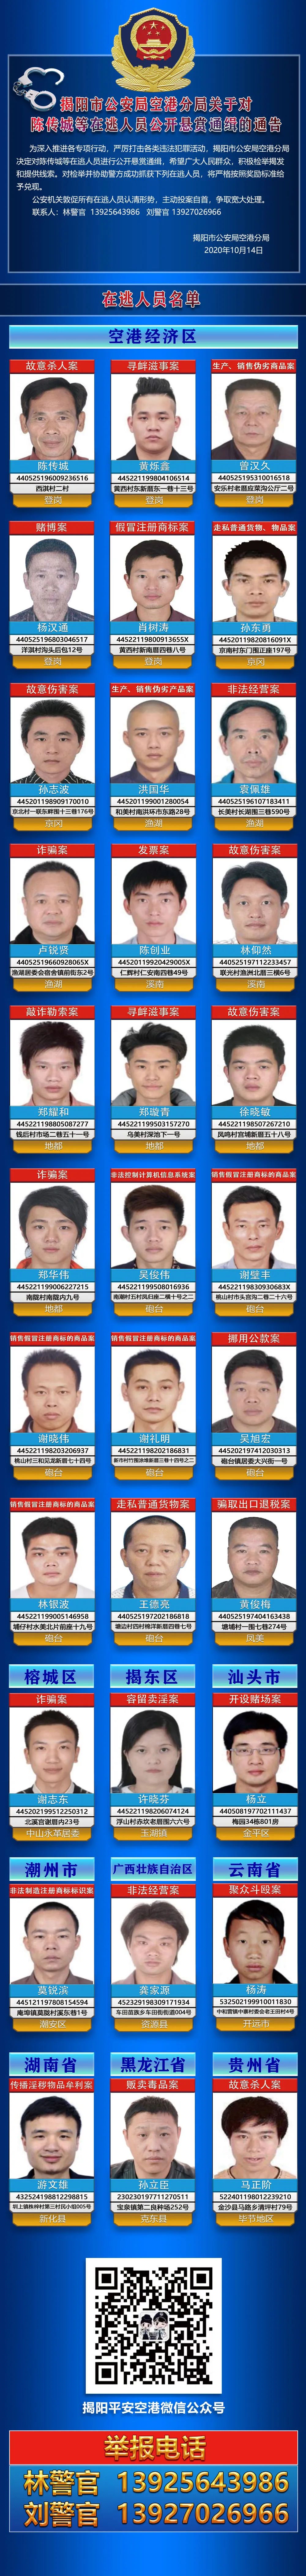 揭阳市公安局空港分局关于对陈传城等在逃人员公开悬赏通缉的通告